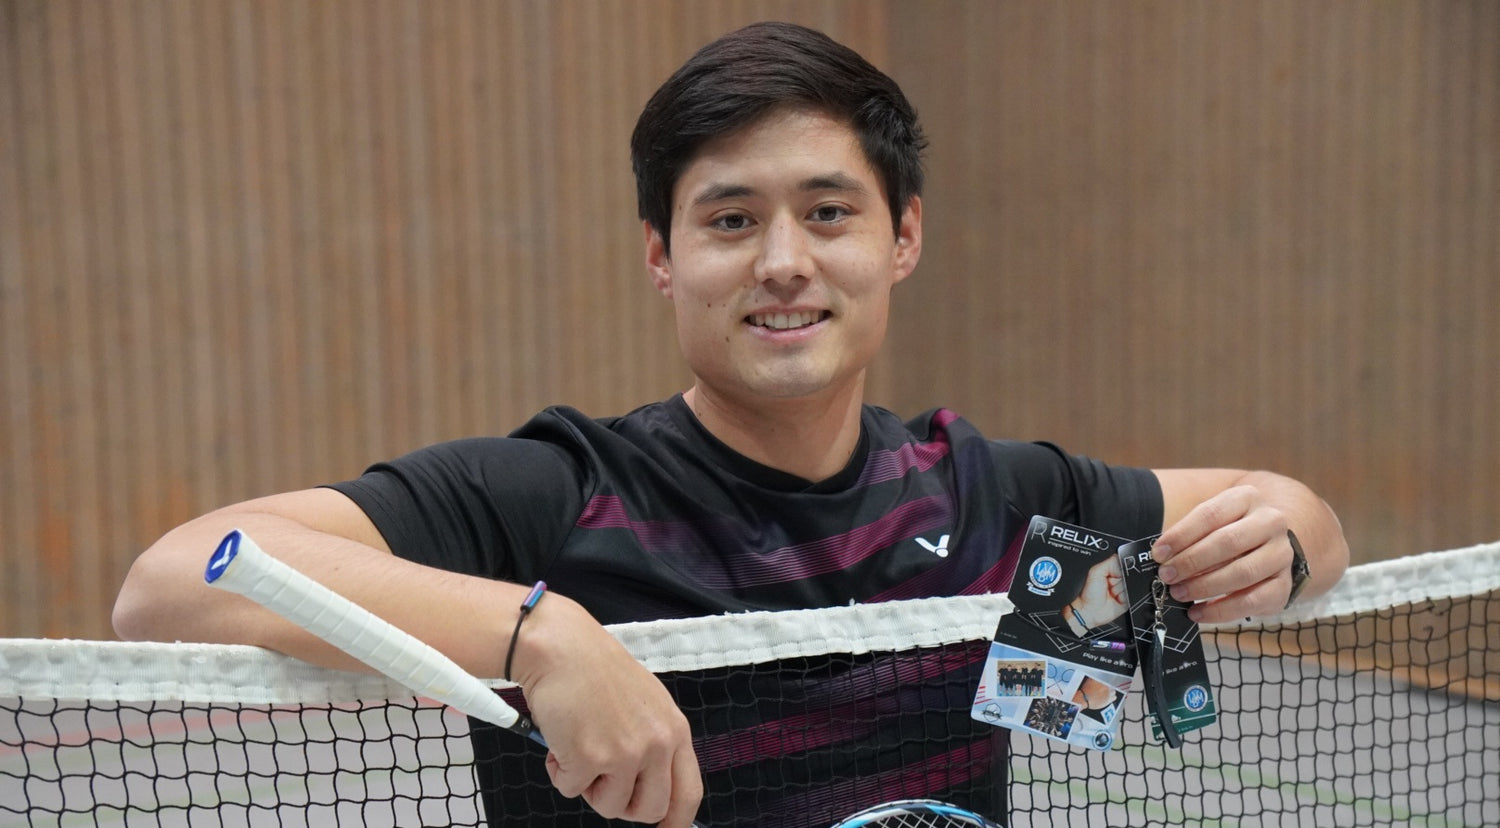 Wei Ming Hauschild Gründer von Relix Badmintonspieler